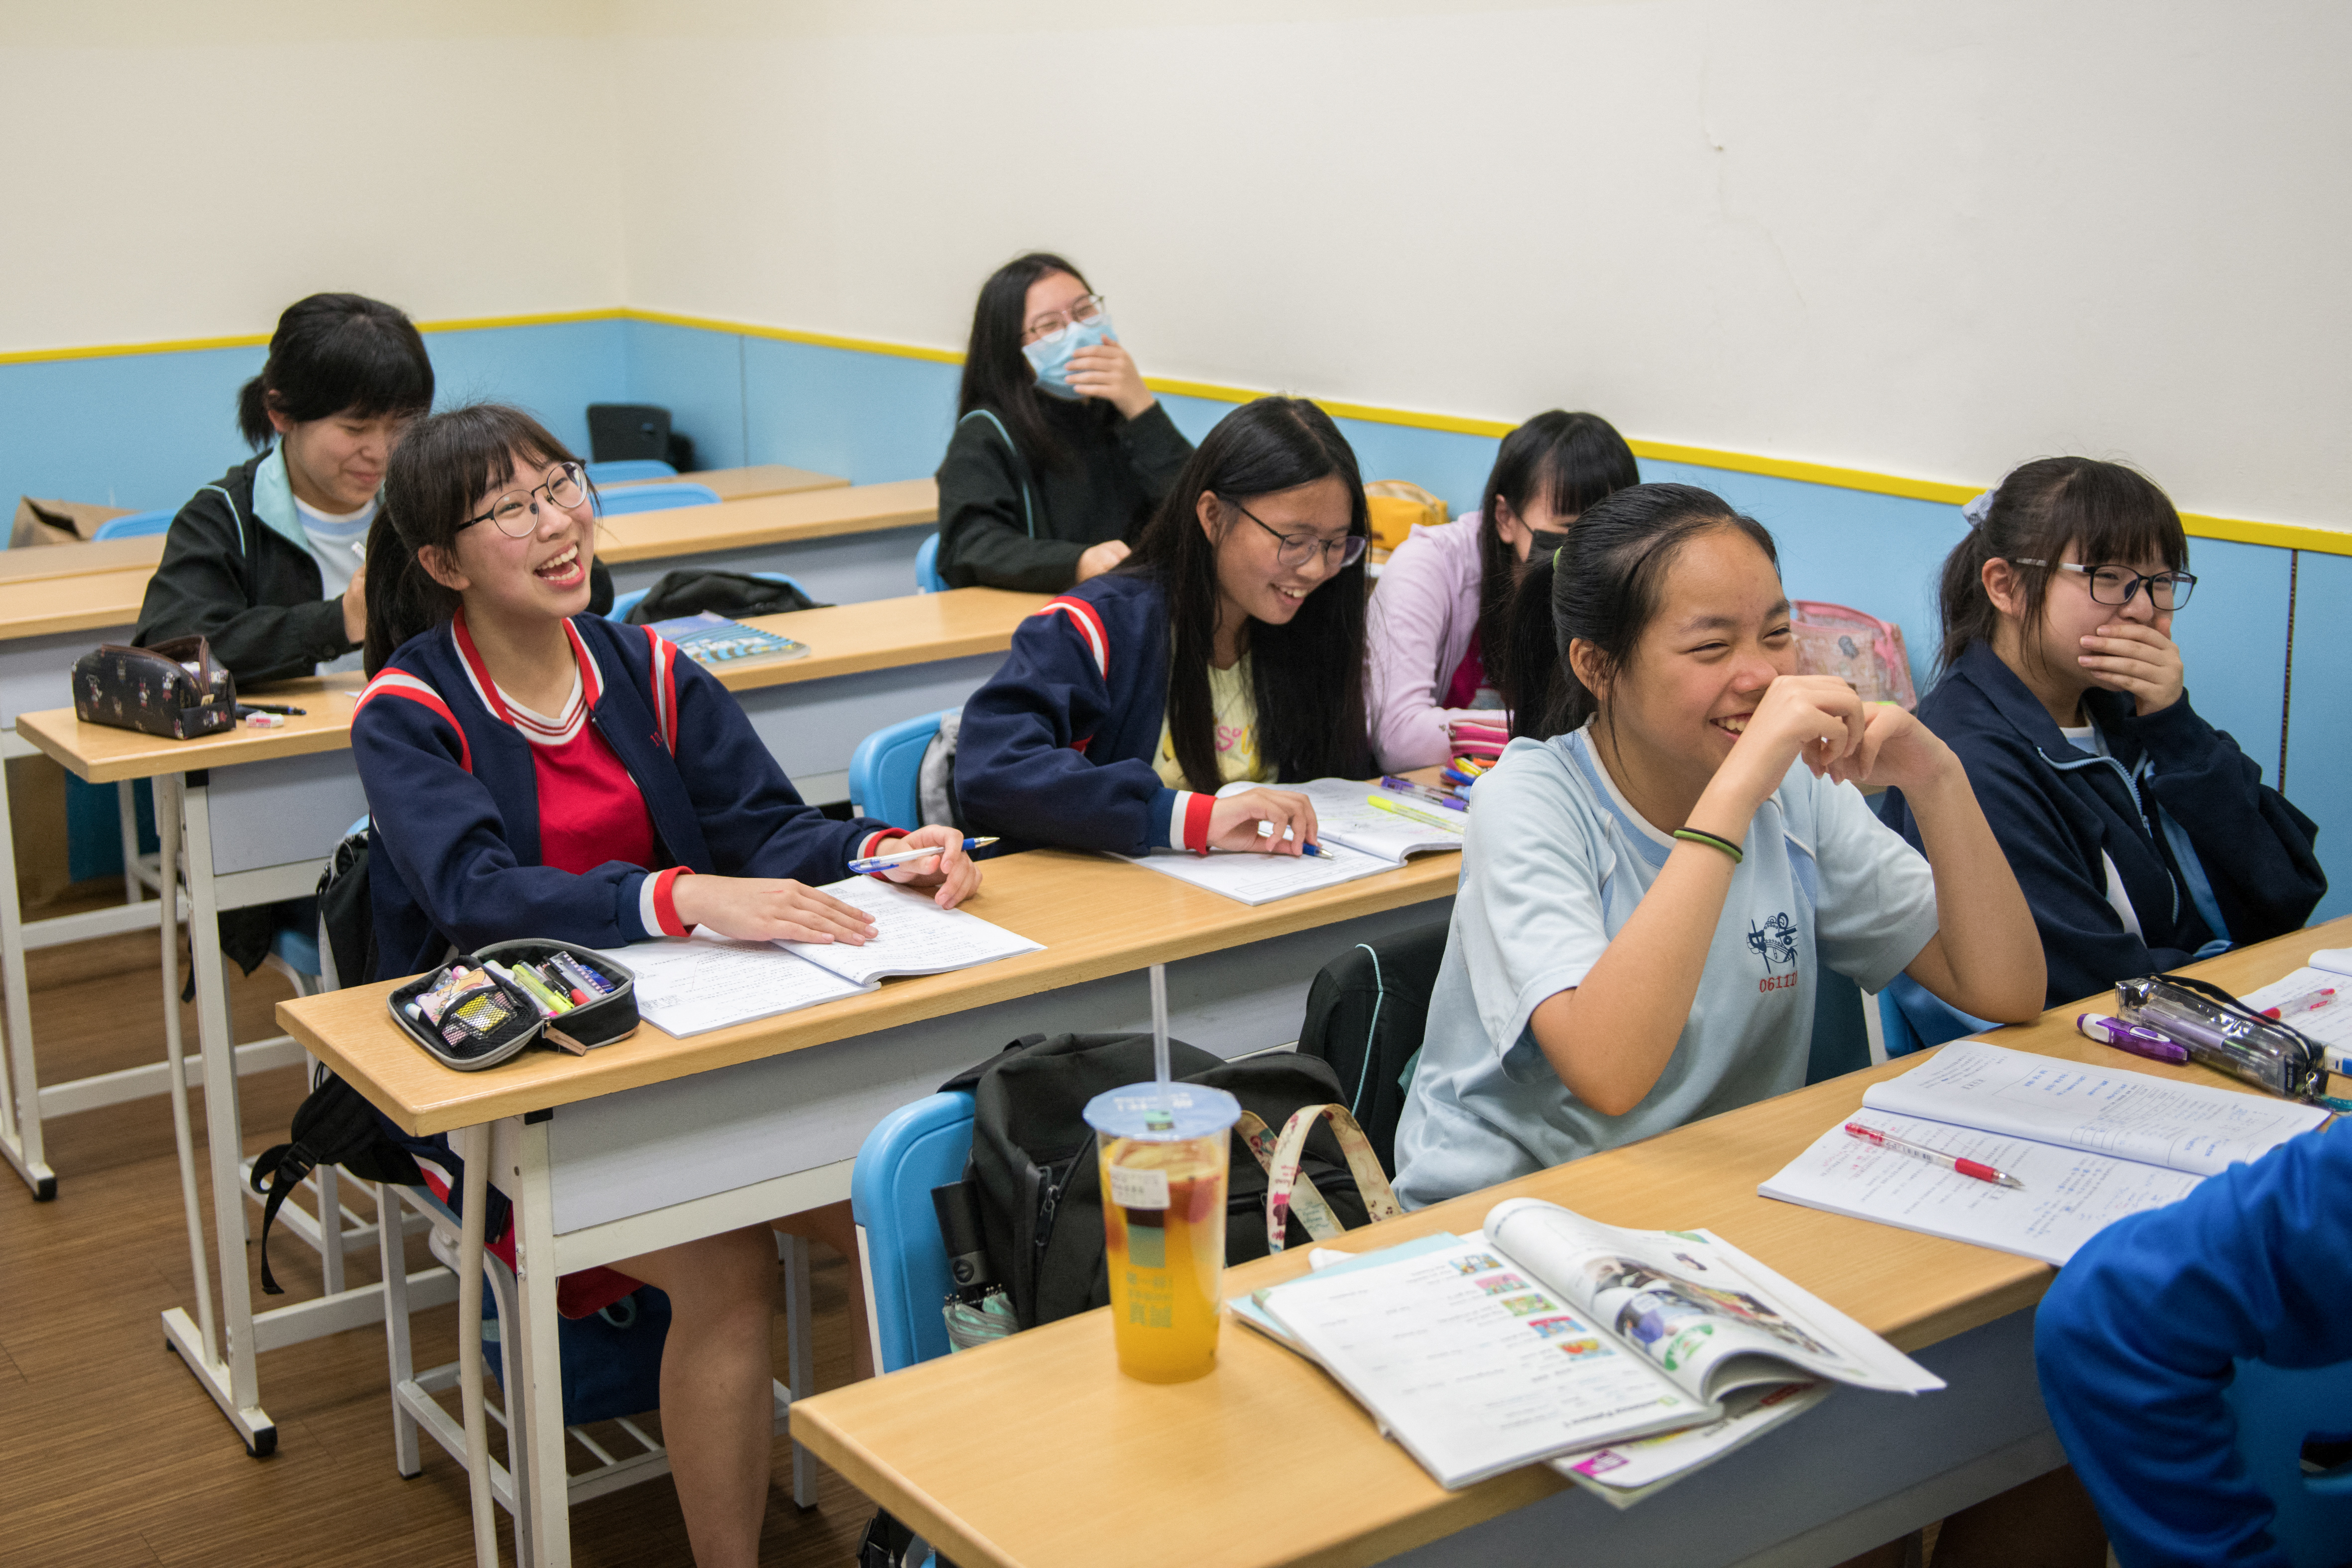 怎麼笑得這麼開心？在台北一所學校的課堂上的情景。